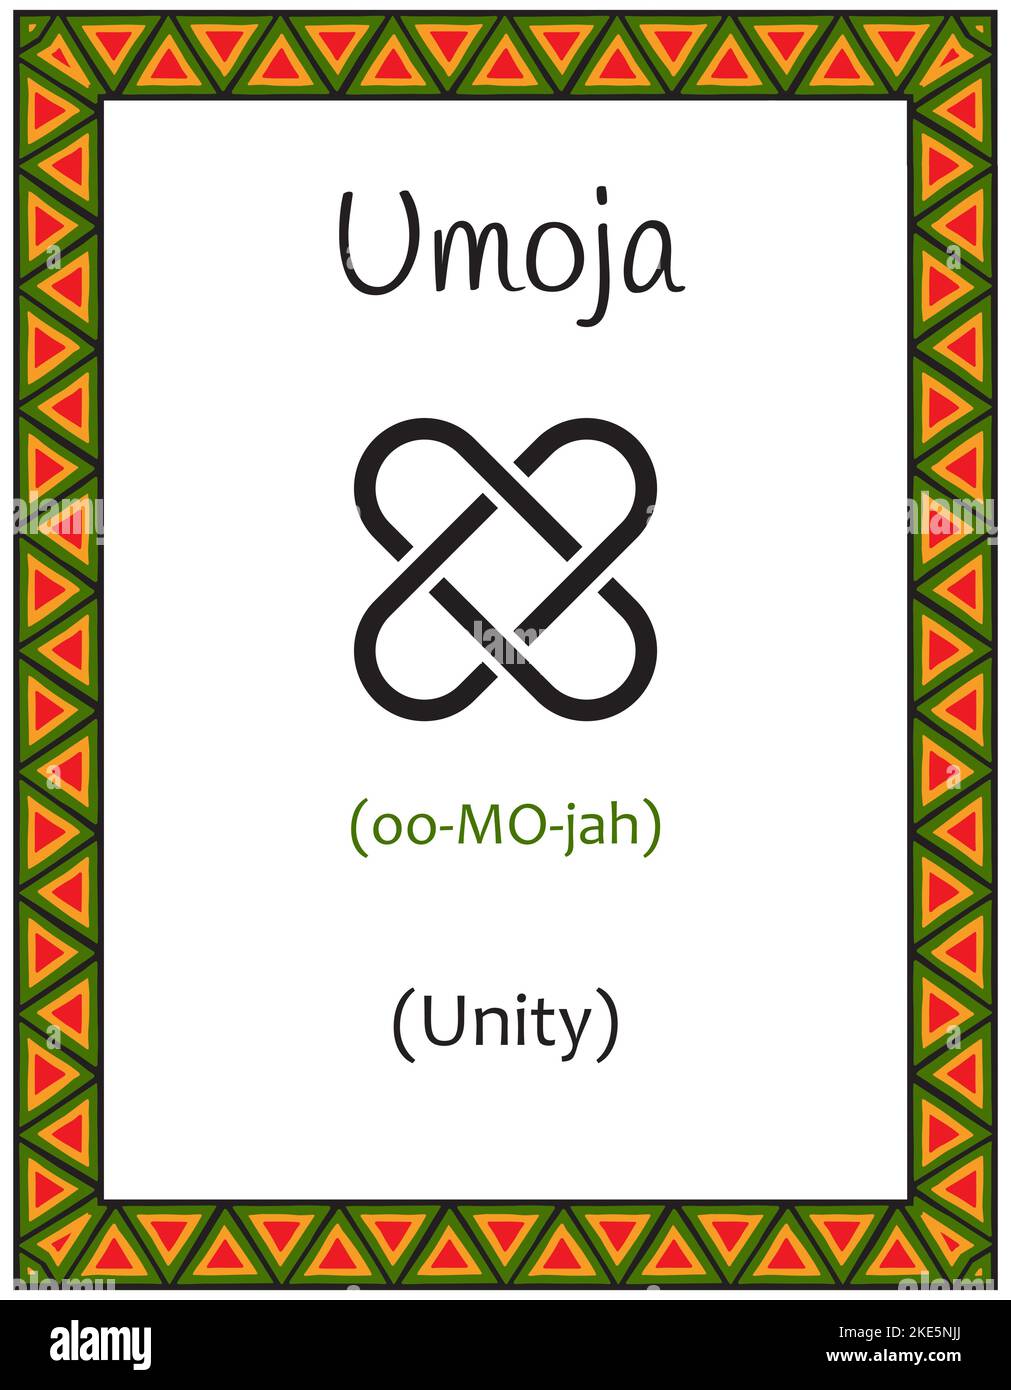 Eine Karte mit einem der Kwanzaa-Prinzipien. Symbol Umoja bedeutet Einheit in Suaheli. Poster mit Schild und Beschreibung. Ethnisch-afrikanisches Muster in Traditiona Stock Vektor